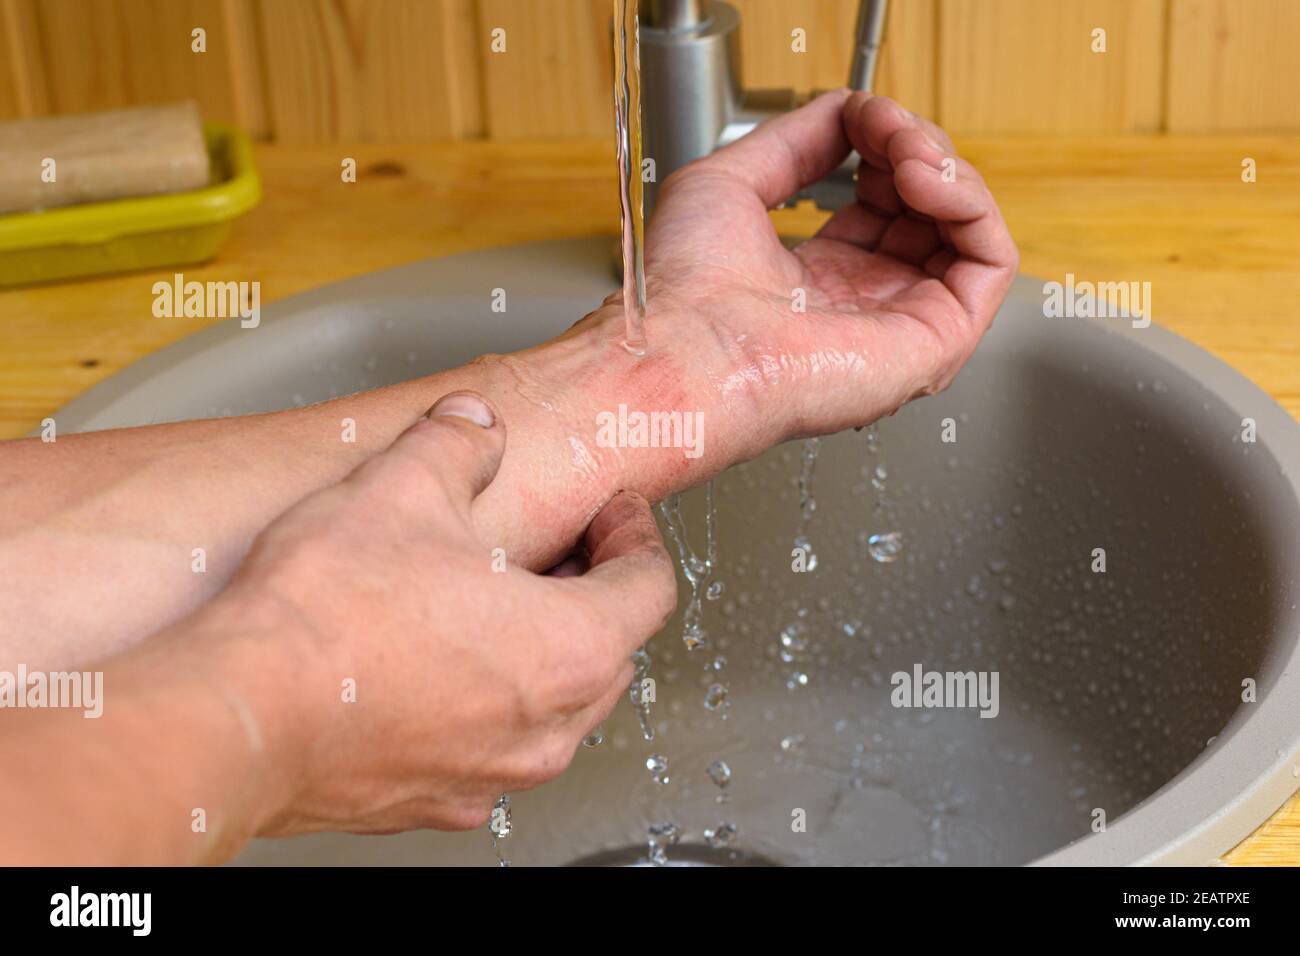 Un hombre lava la herida en su brazo bajo el correr agua en el fregadero Foto de stock